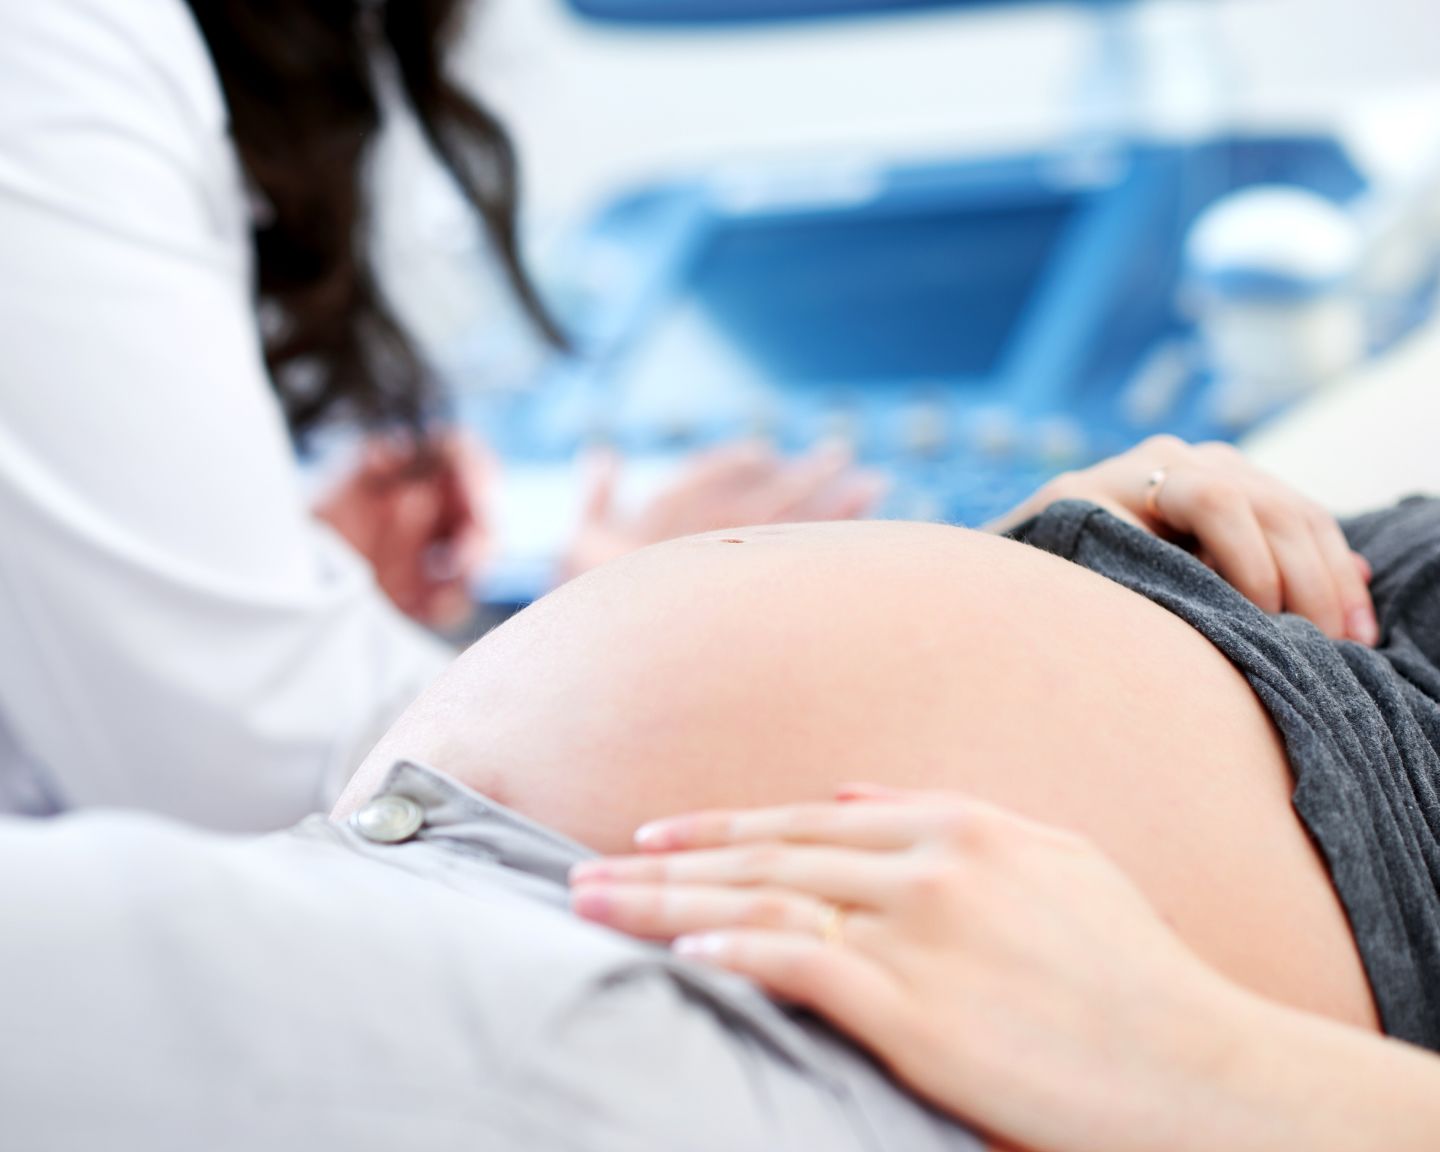 Репродуктивная медицина: какую клинику в Одессе лучше выбрать?